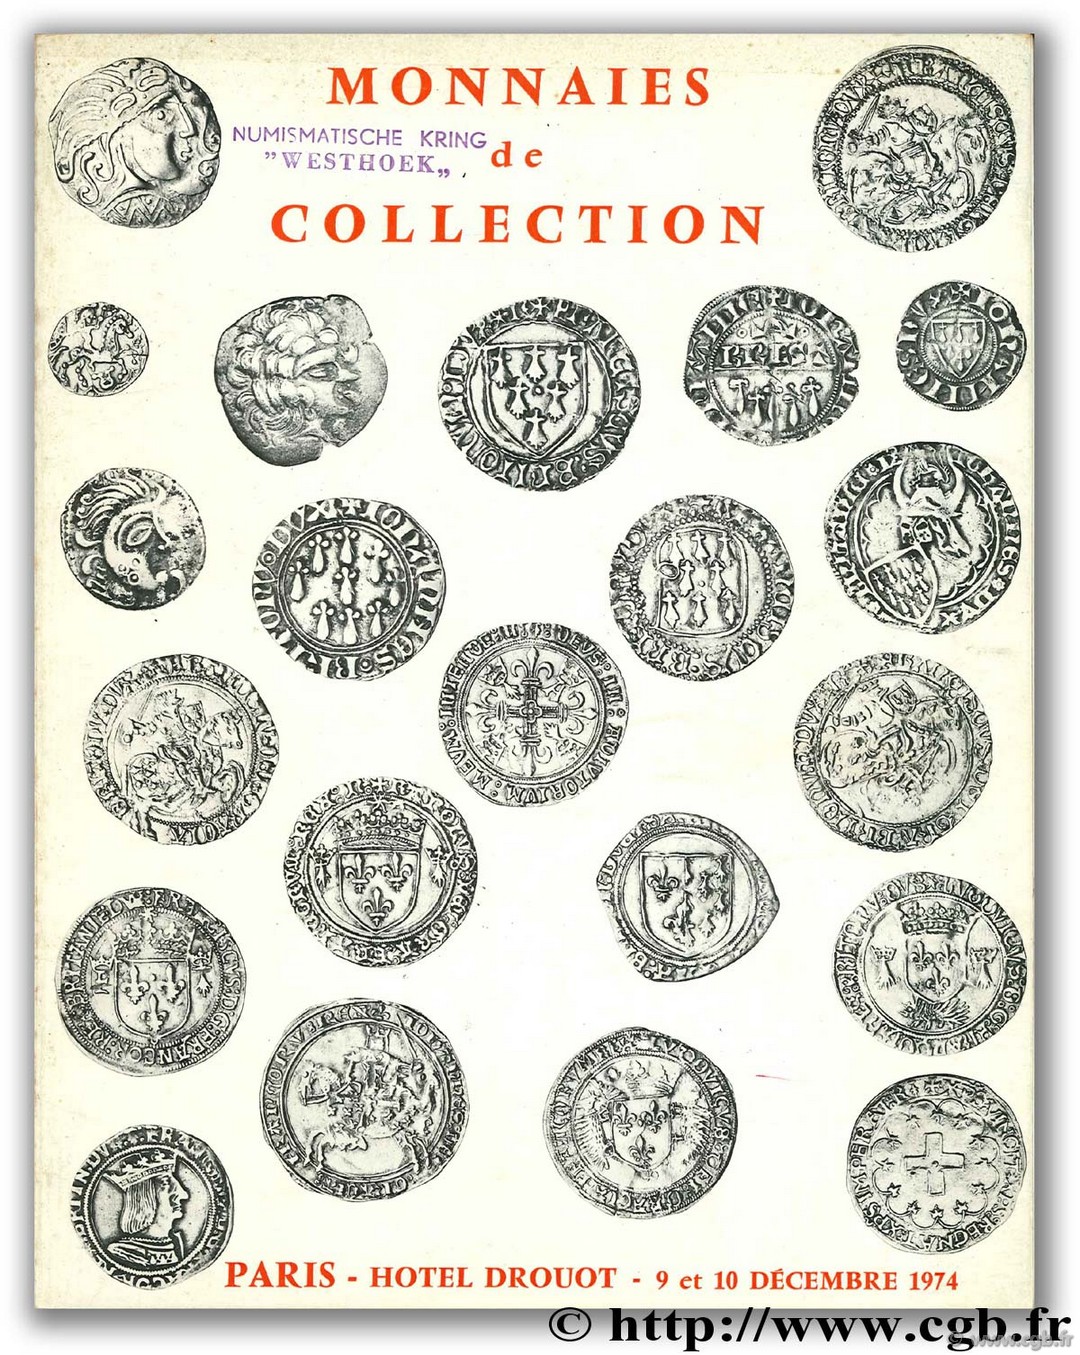 Monnaies de collection VINCHON J.